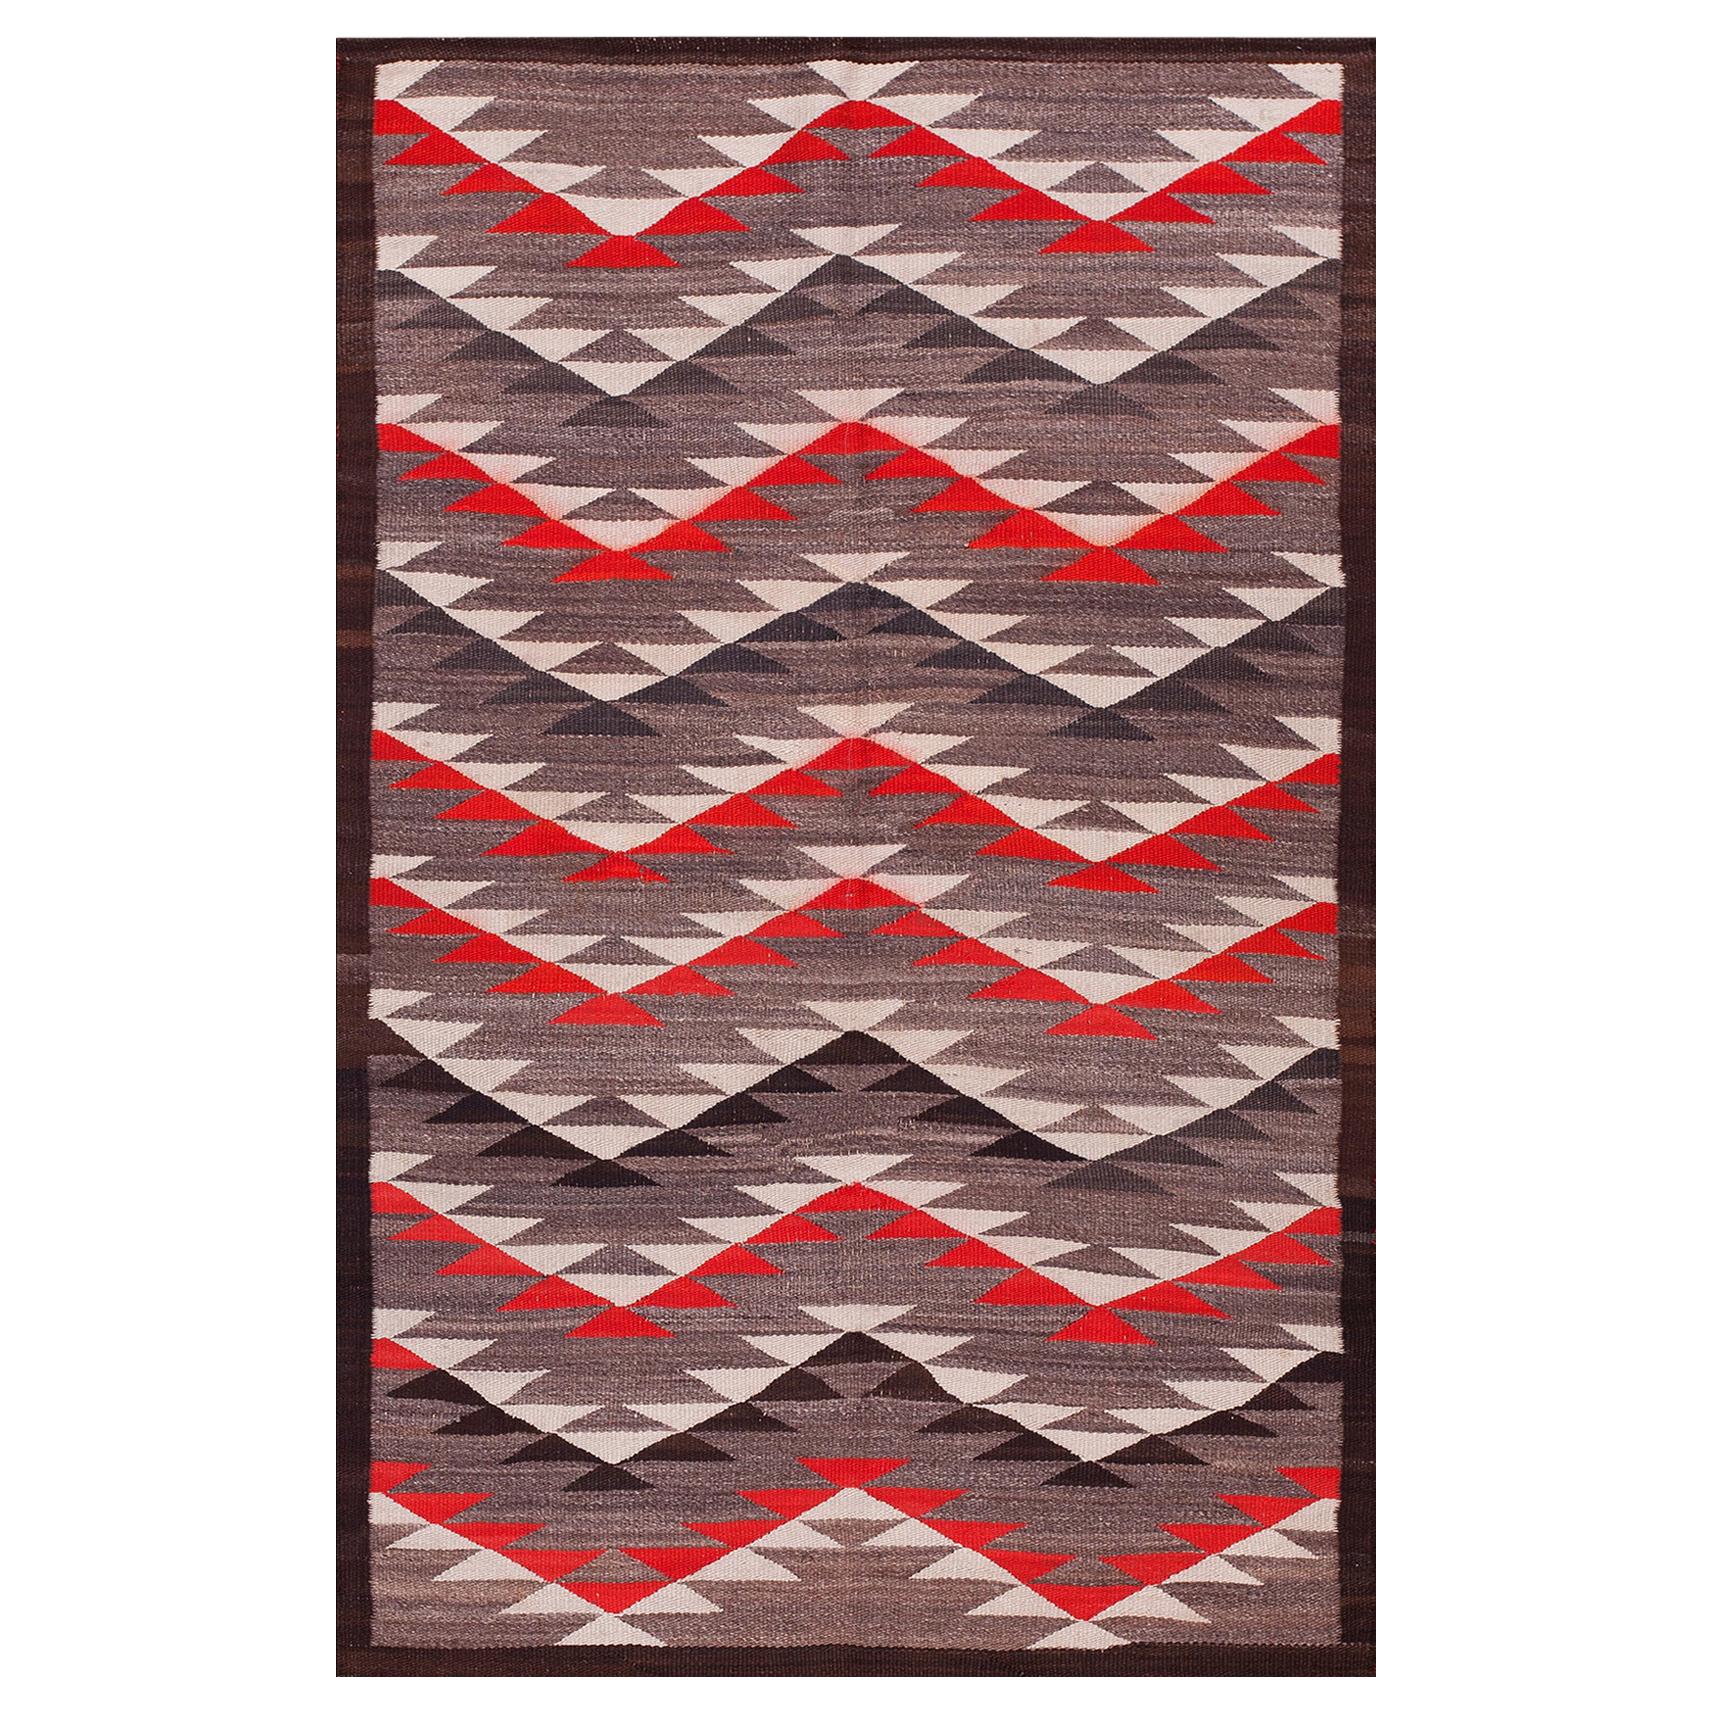 Amerikanischer Navajo-Teppich des frühen 20. Jahrhunderts ( 3'9" x 6'4" - 114 x 193")